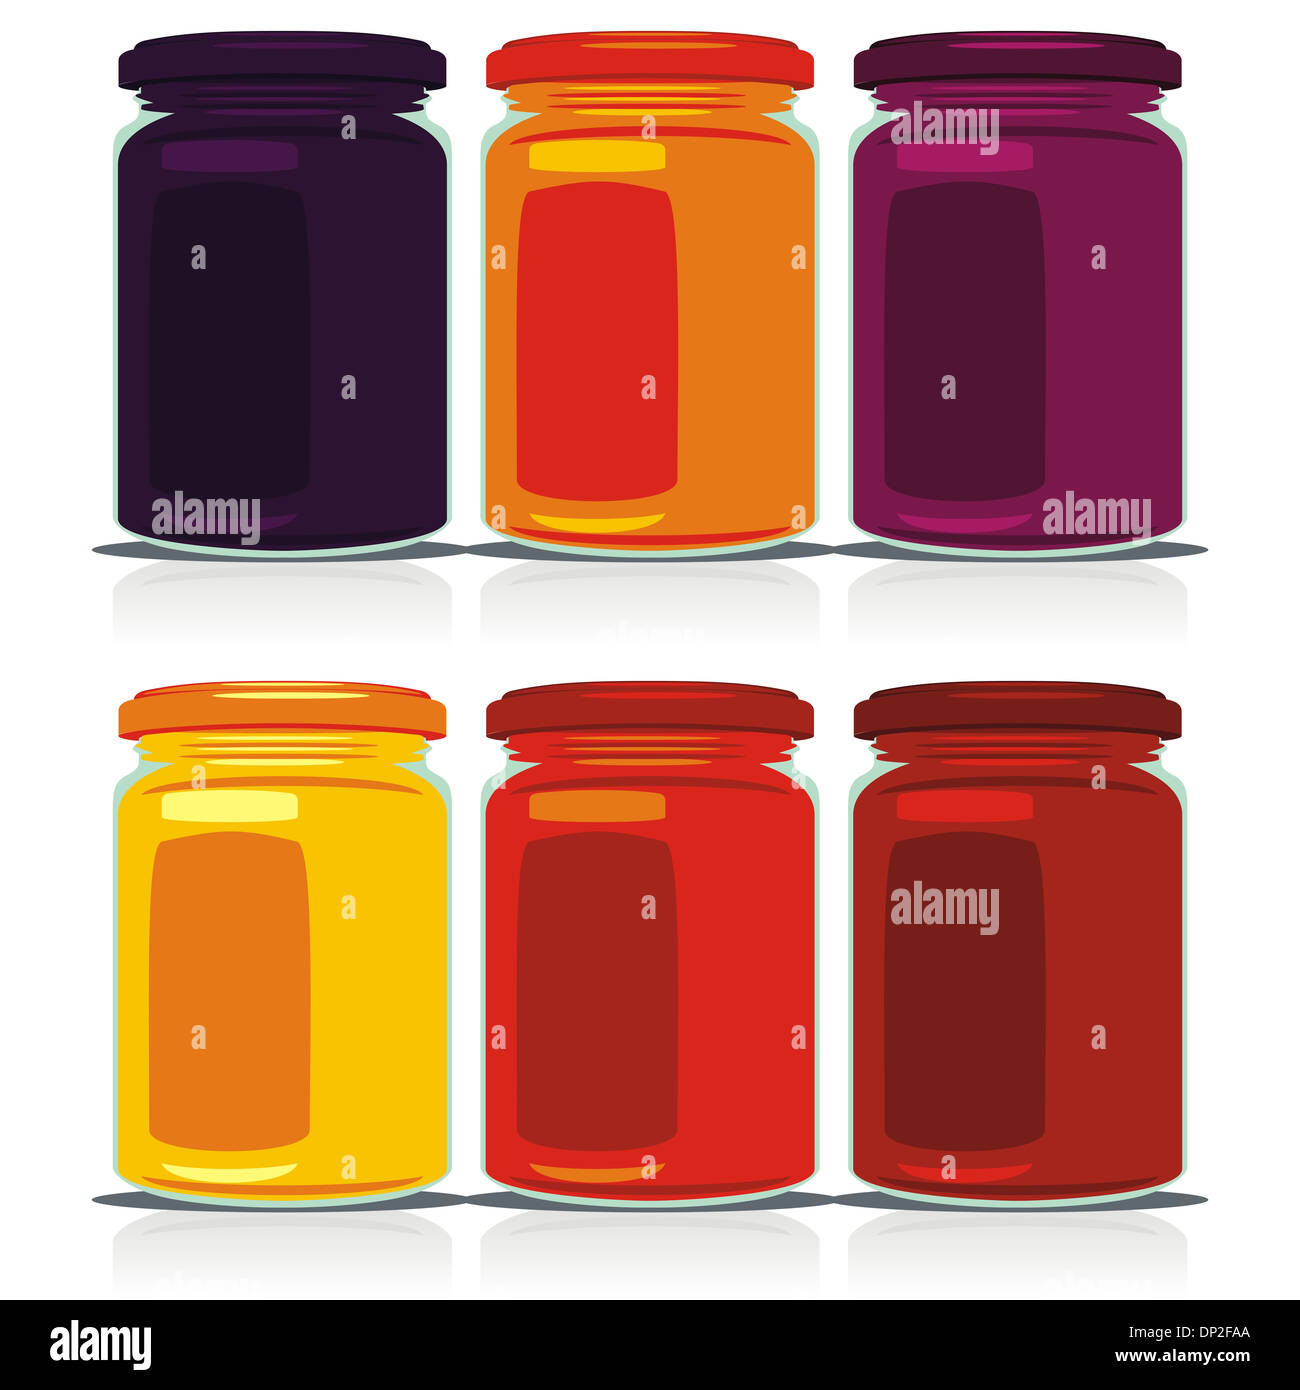 isolated jam jars set Stock Photo